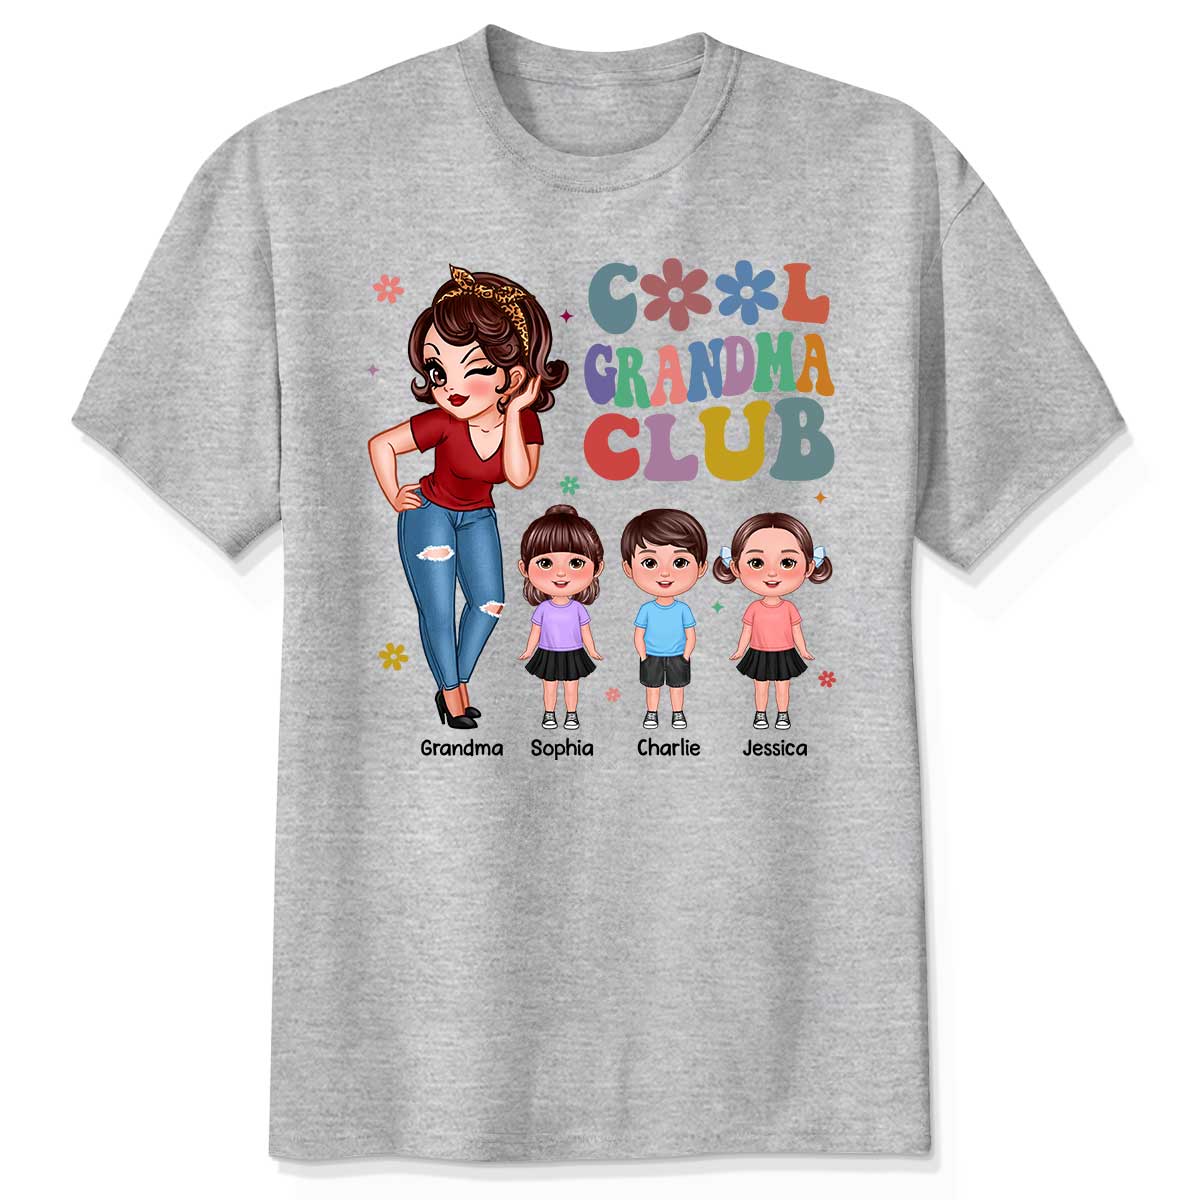 Cool Grandma Club Personalized Shirt, Gift For Grandma